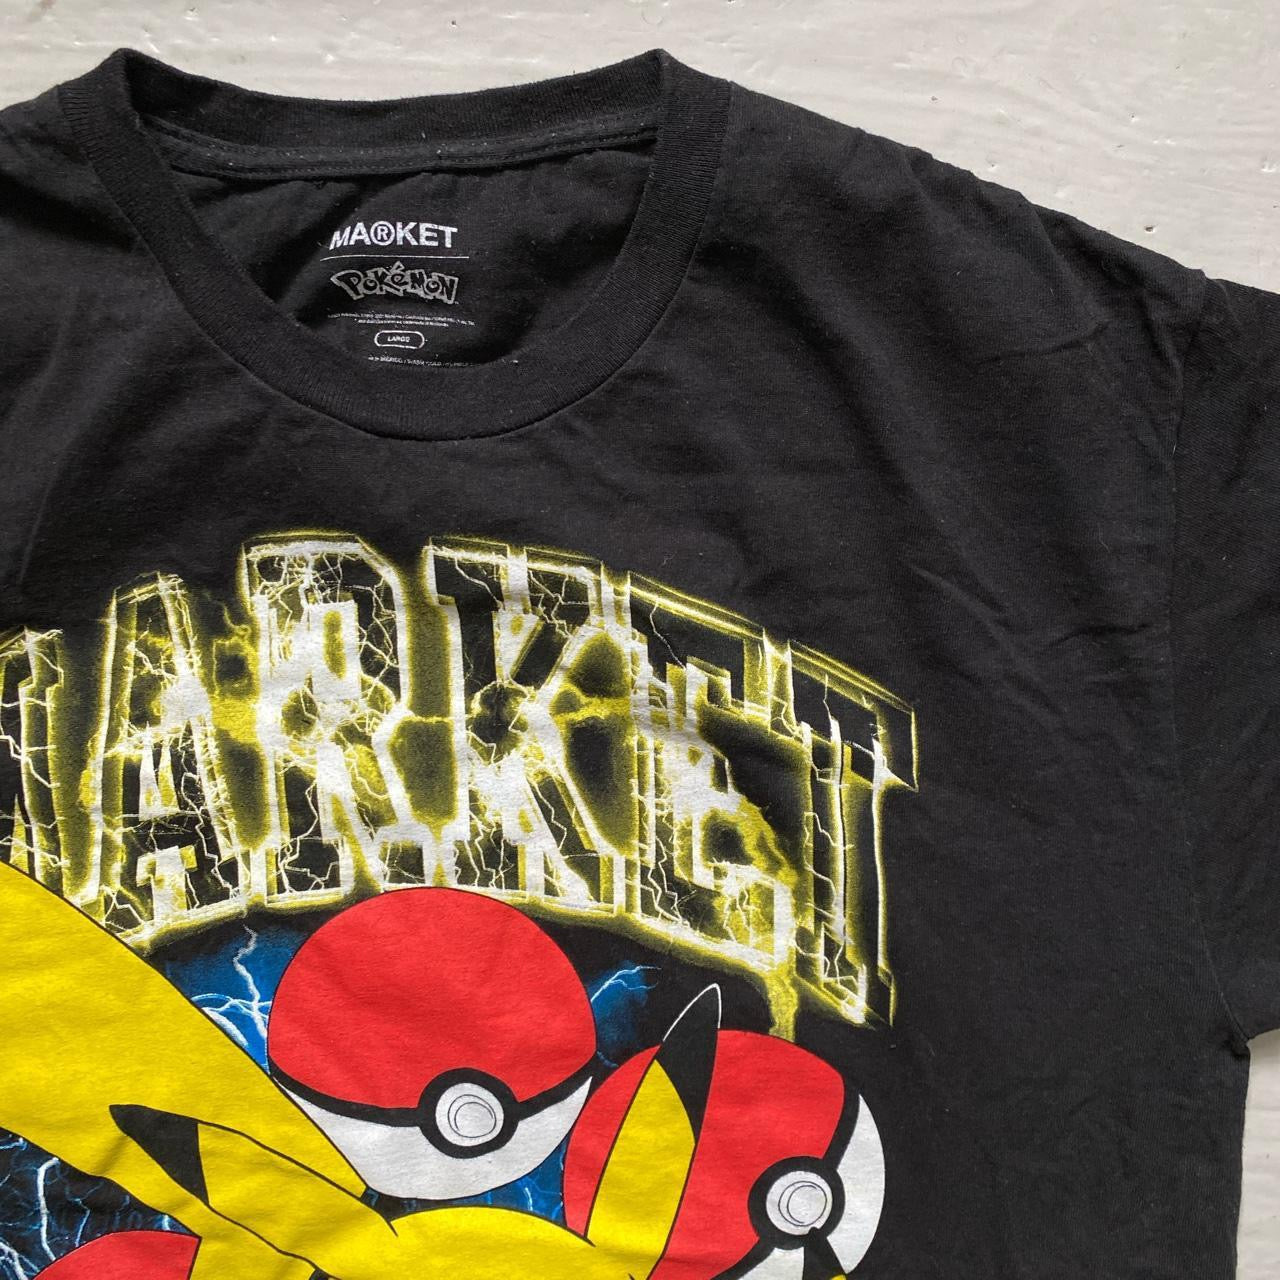 Chinatown Market Pokemon T Shirt (Large)